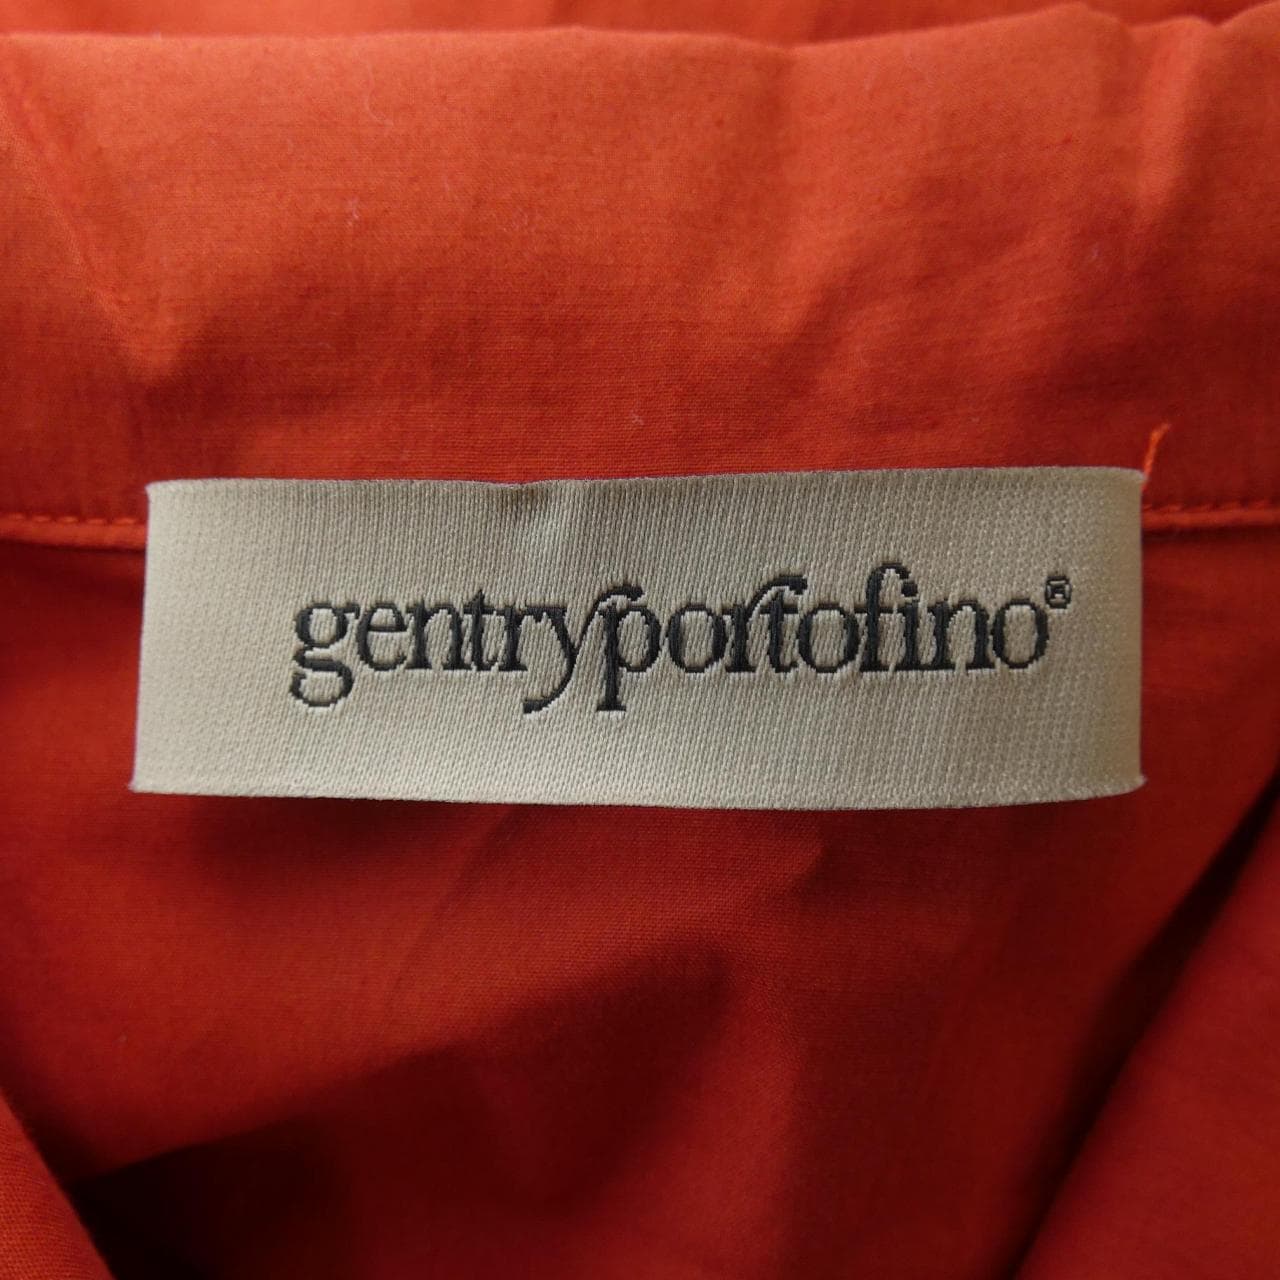 ジェントリーポルトフィーノ gentry portofino ワンピース